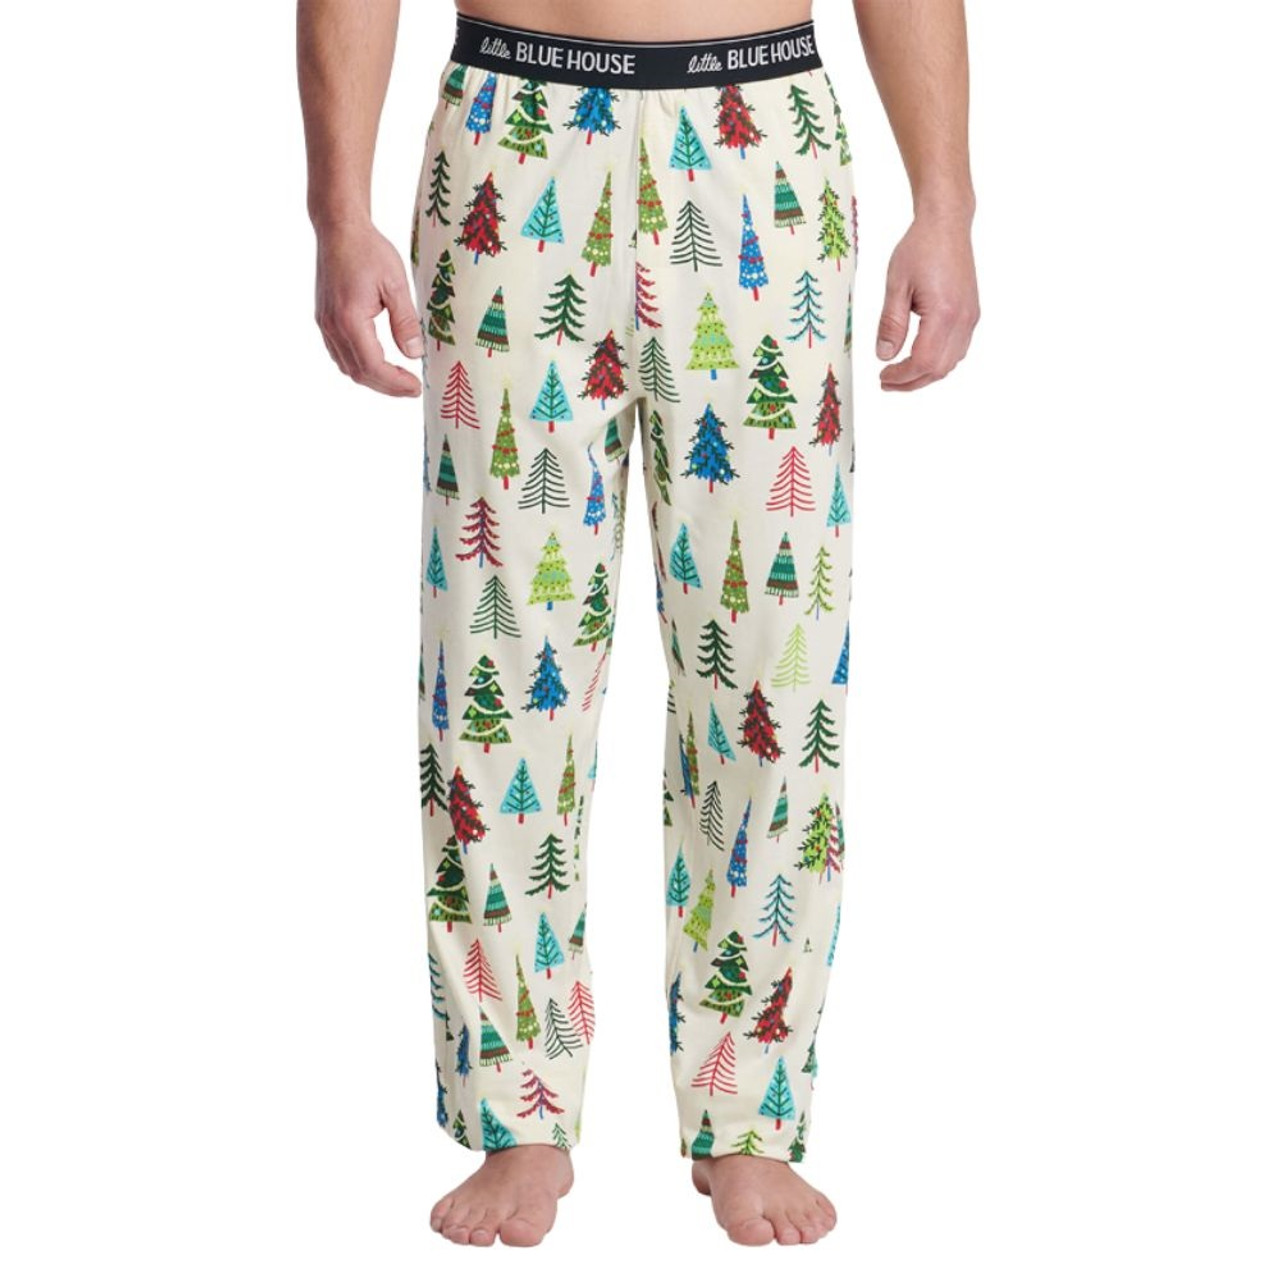 Disney Nightmare before Christmas Fuzzy Pajama Pants Medium  Nightmare  before christmas, Christmas pajama pants, Fuzzy pajama pants